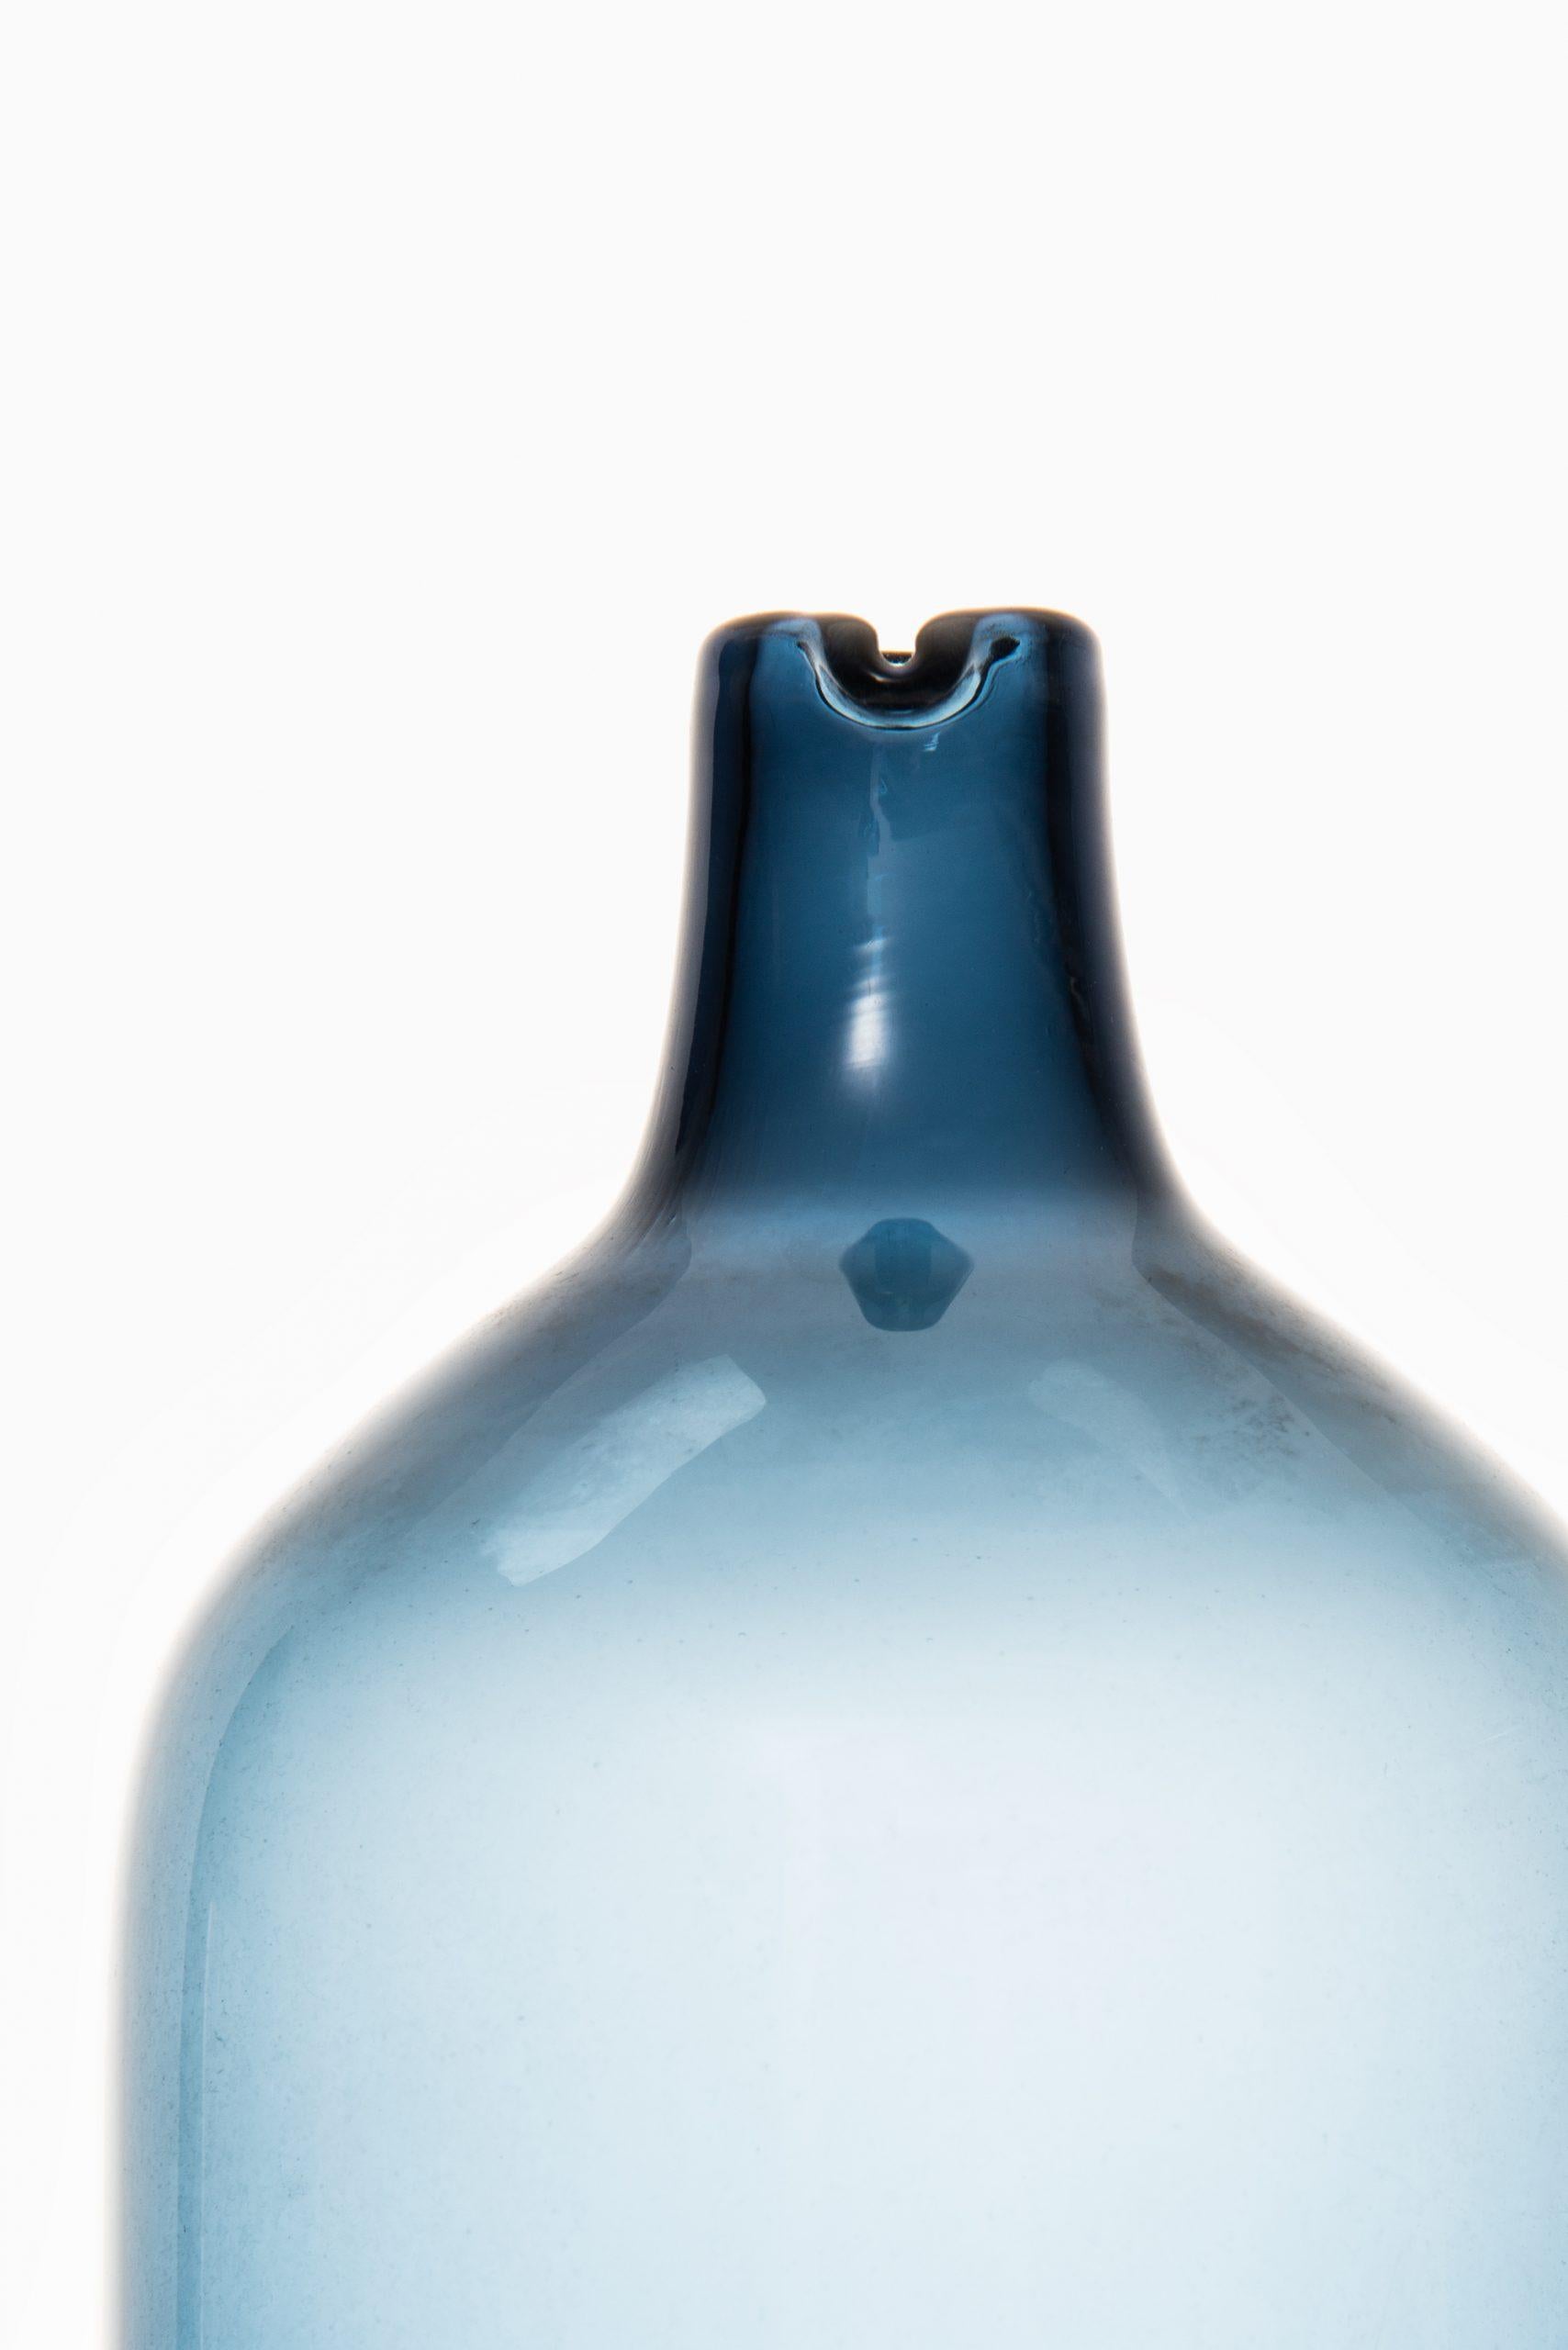 Bouteille en verre / vase modèle Pullo / Vase oiseau conçu par Timo Sarpaneva. Produit par Iittala en Finlande. 